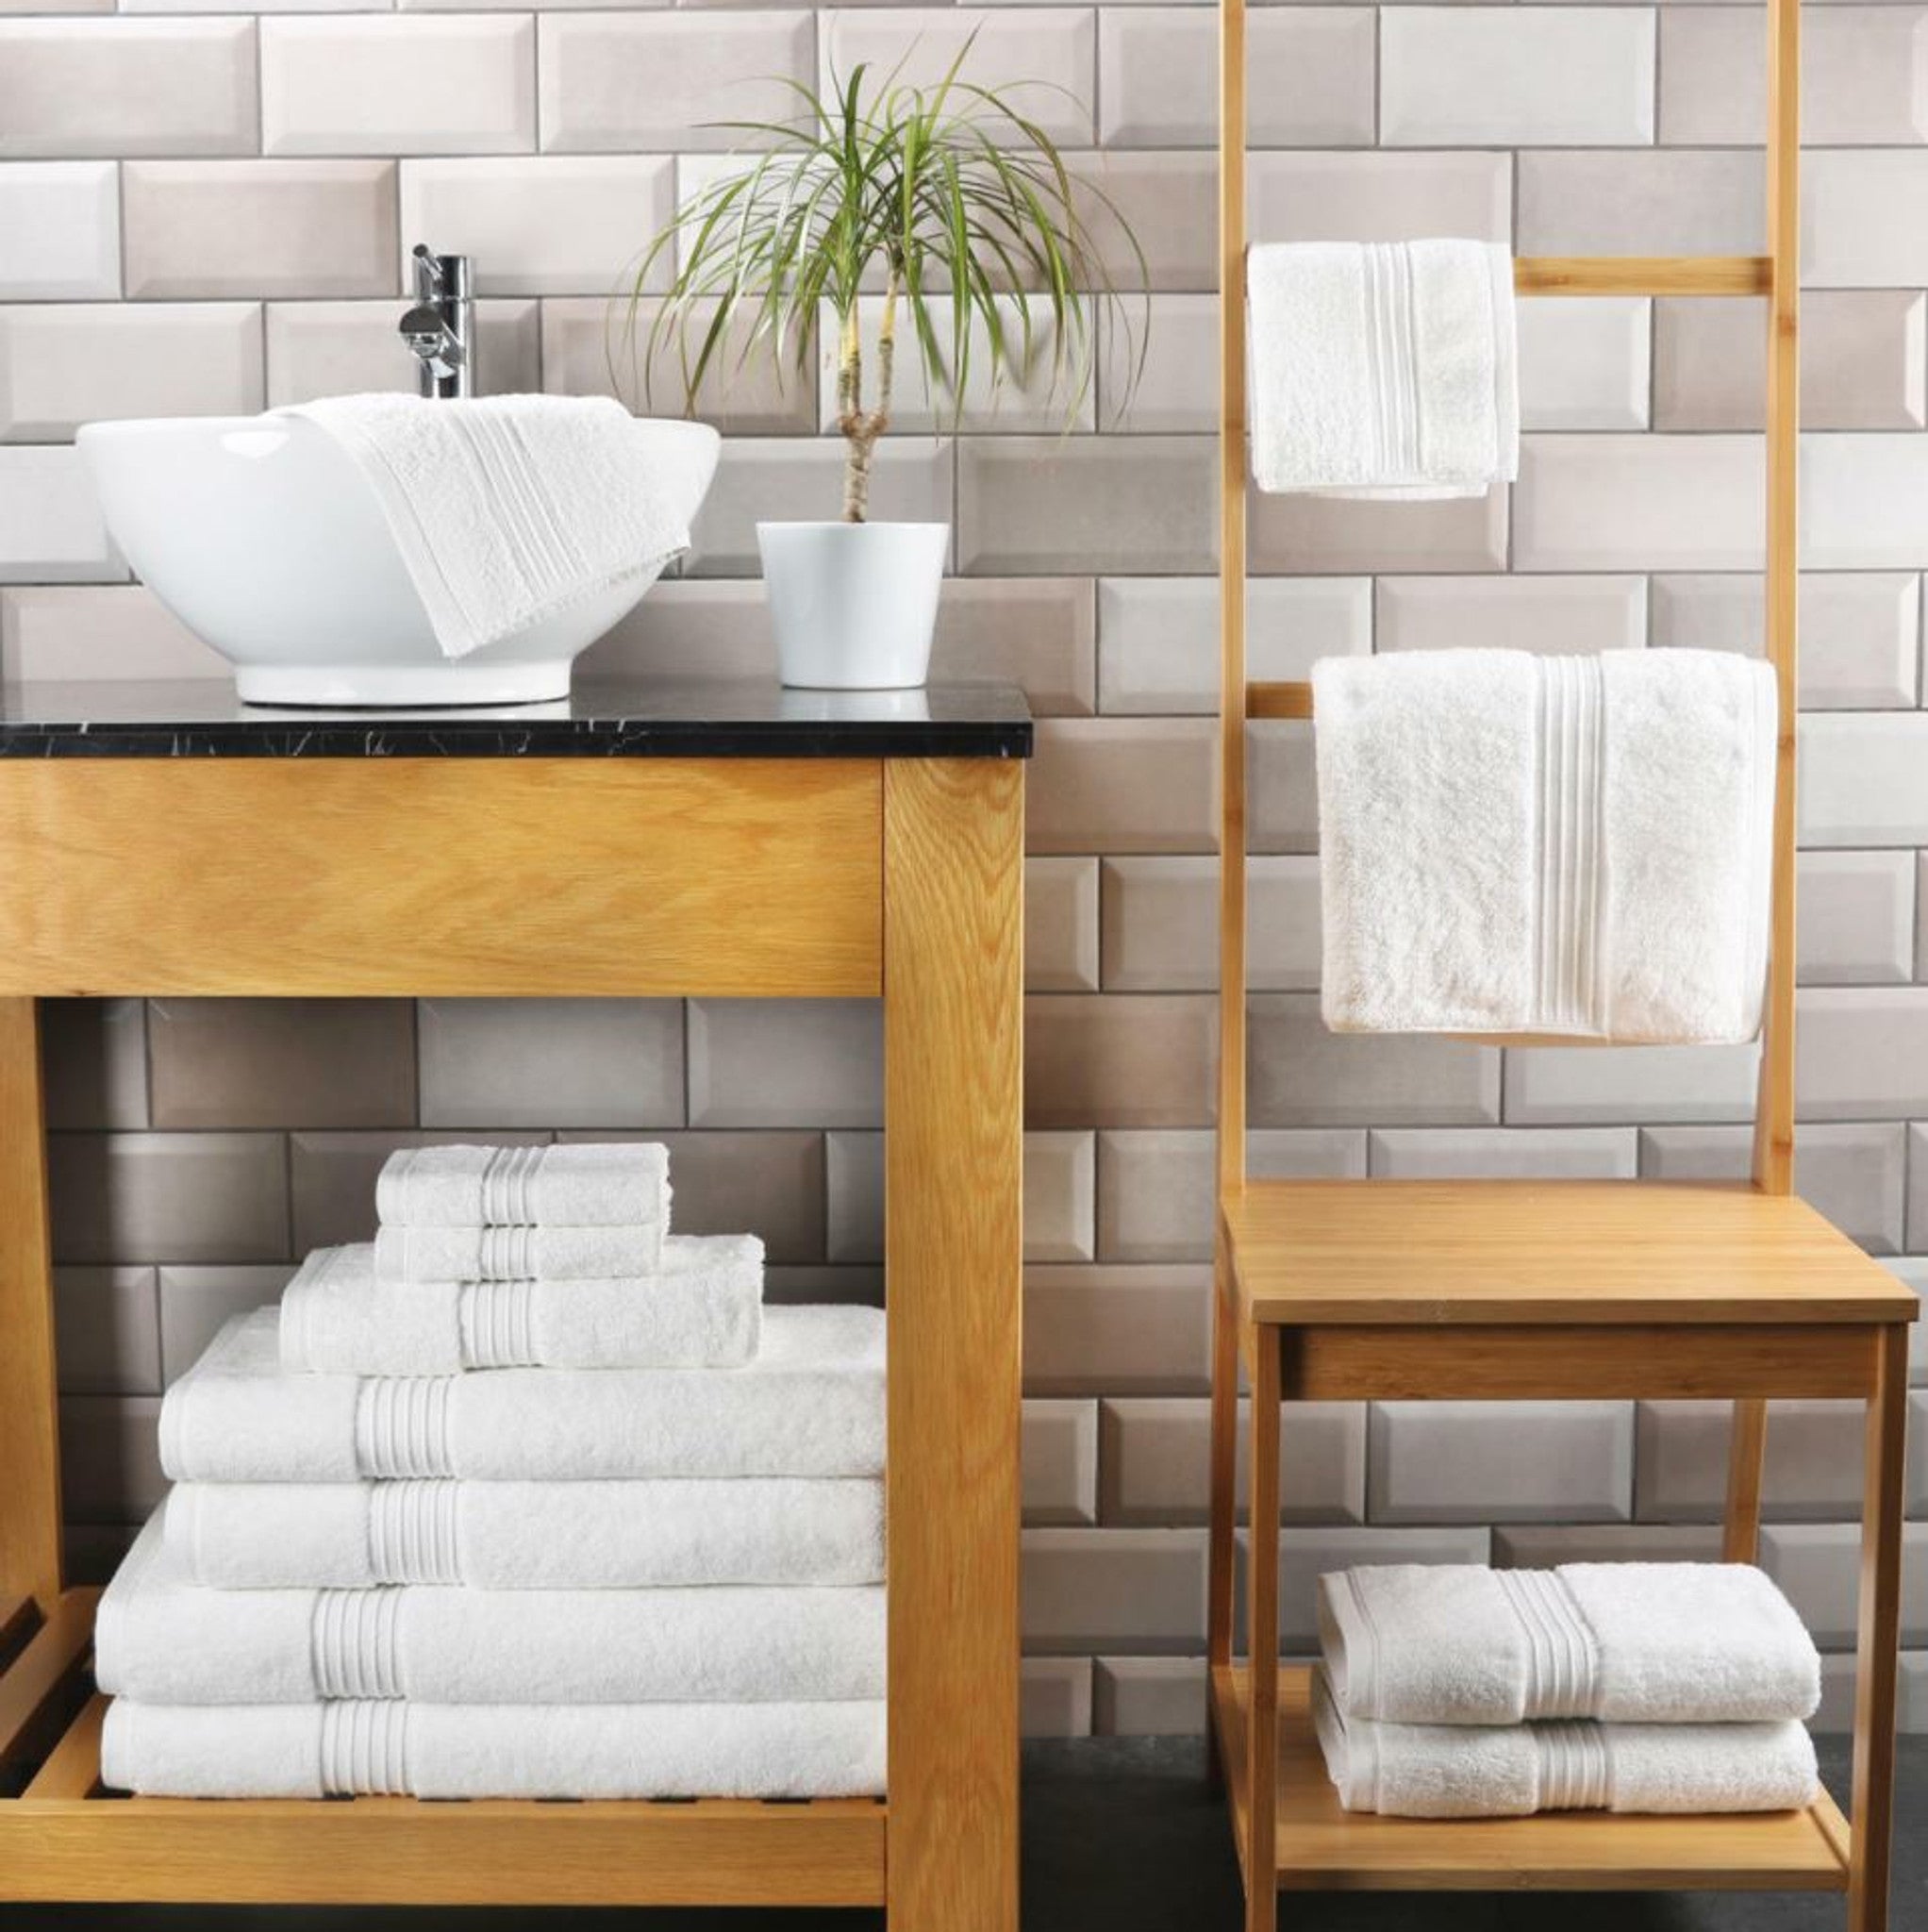 12-Piece Towel Bale - Complete Bathroom Laundry Set